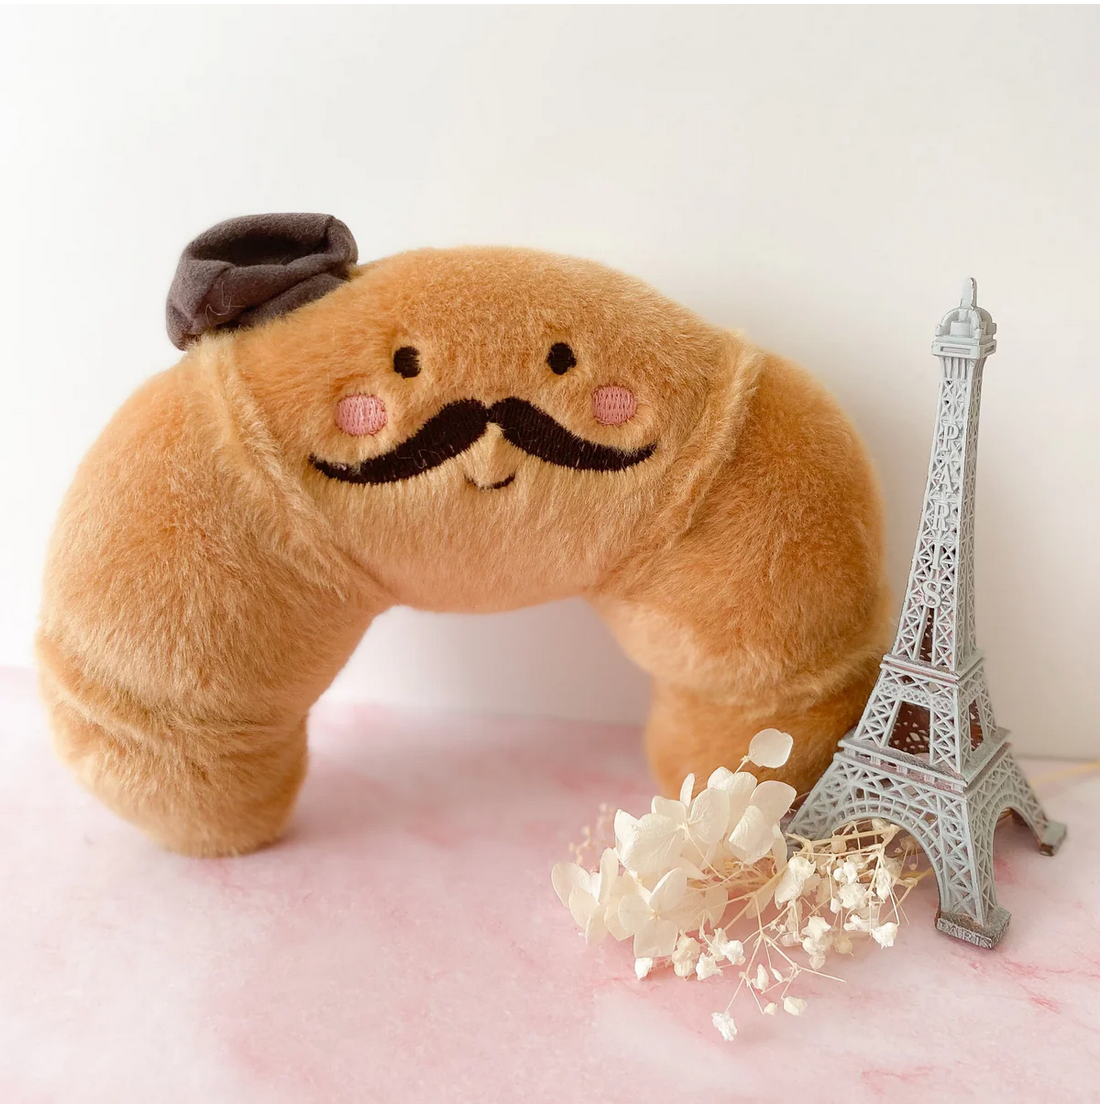 Mon Ami Monsieur Croissant Stuffed Animal Toy - Little Birdies